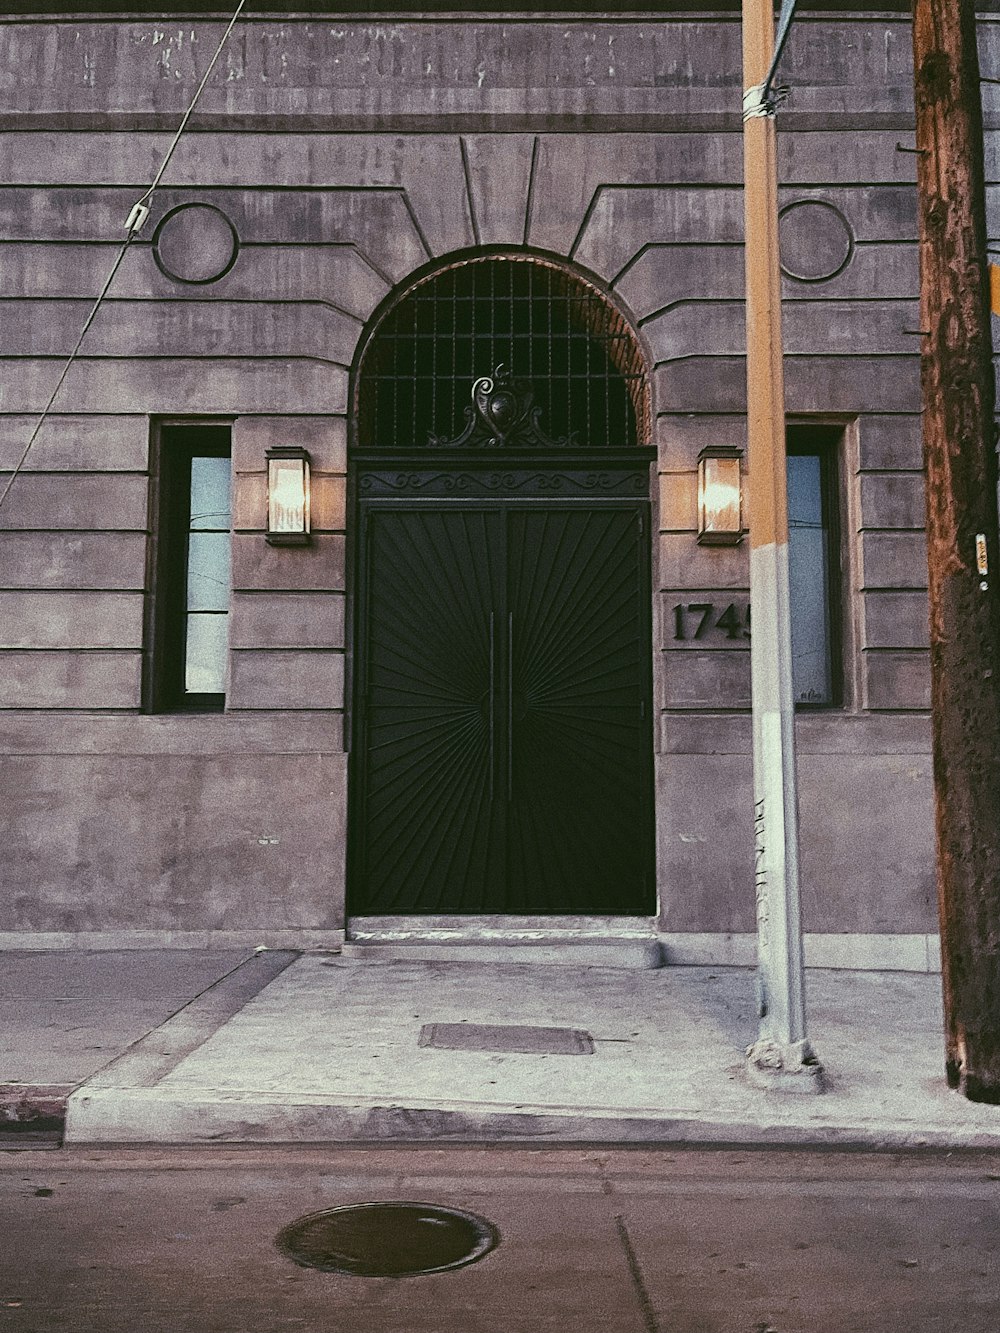 brown brick building with green door